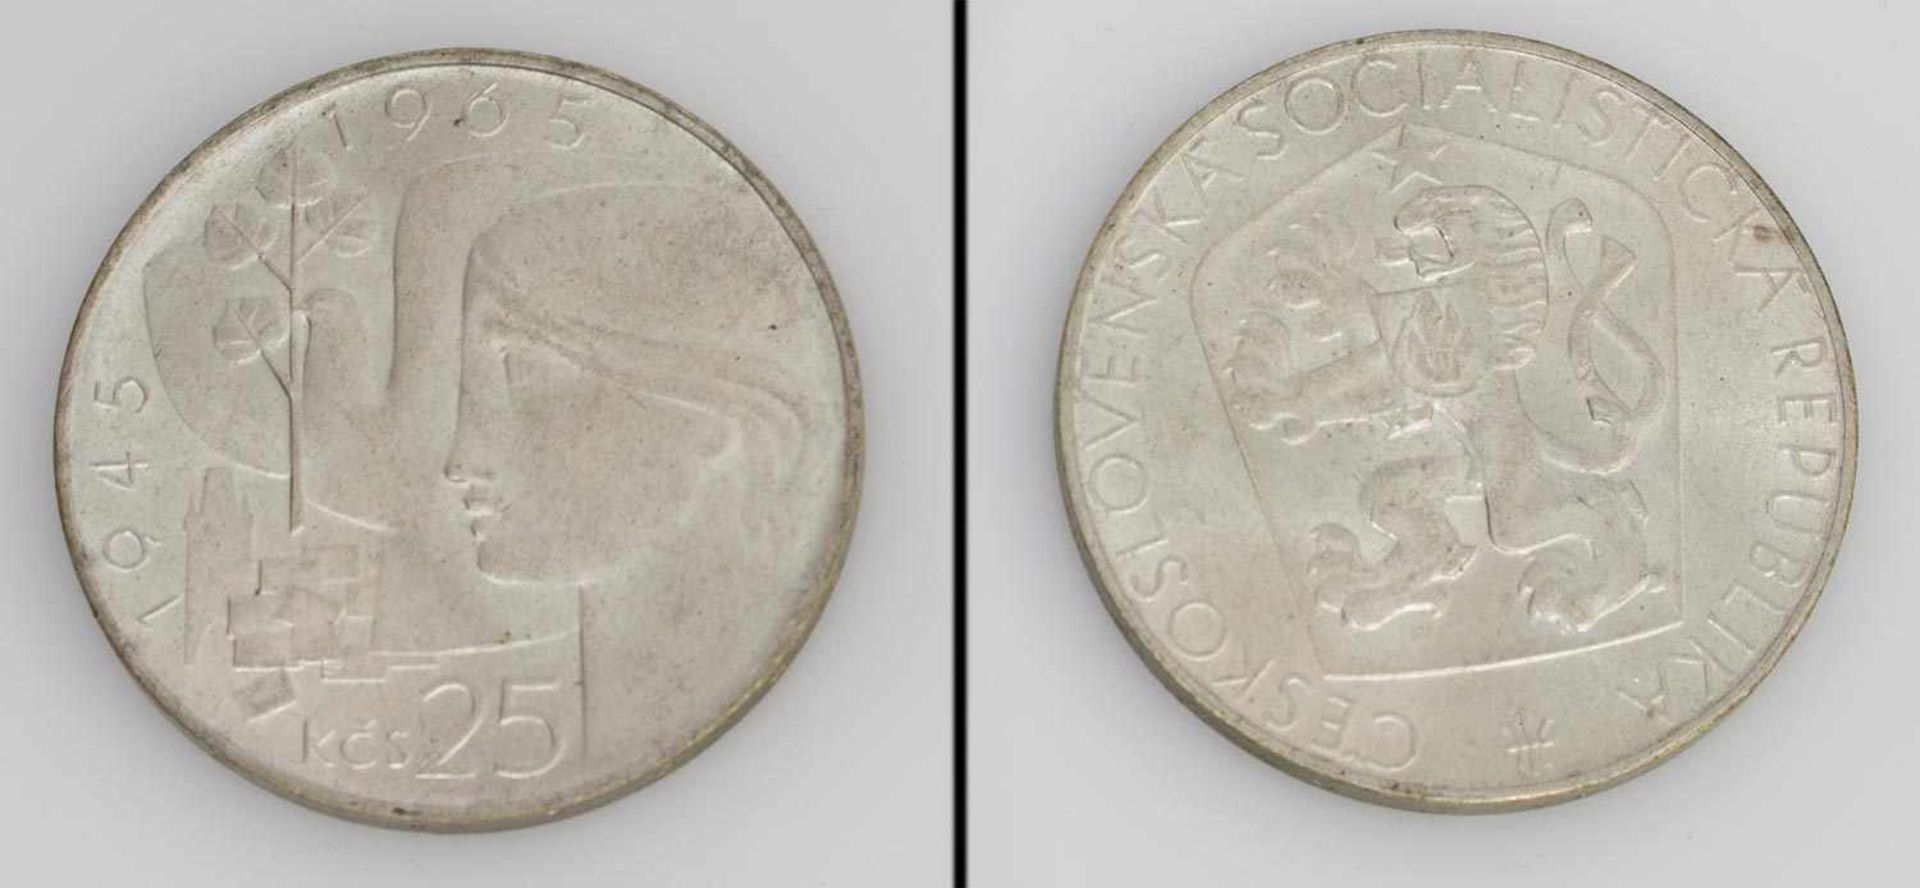 25 Kronen Tschecheslovakei 1965, 20 Jahre Befreiung, Stgl.